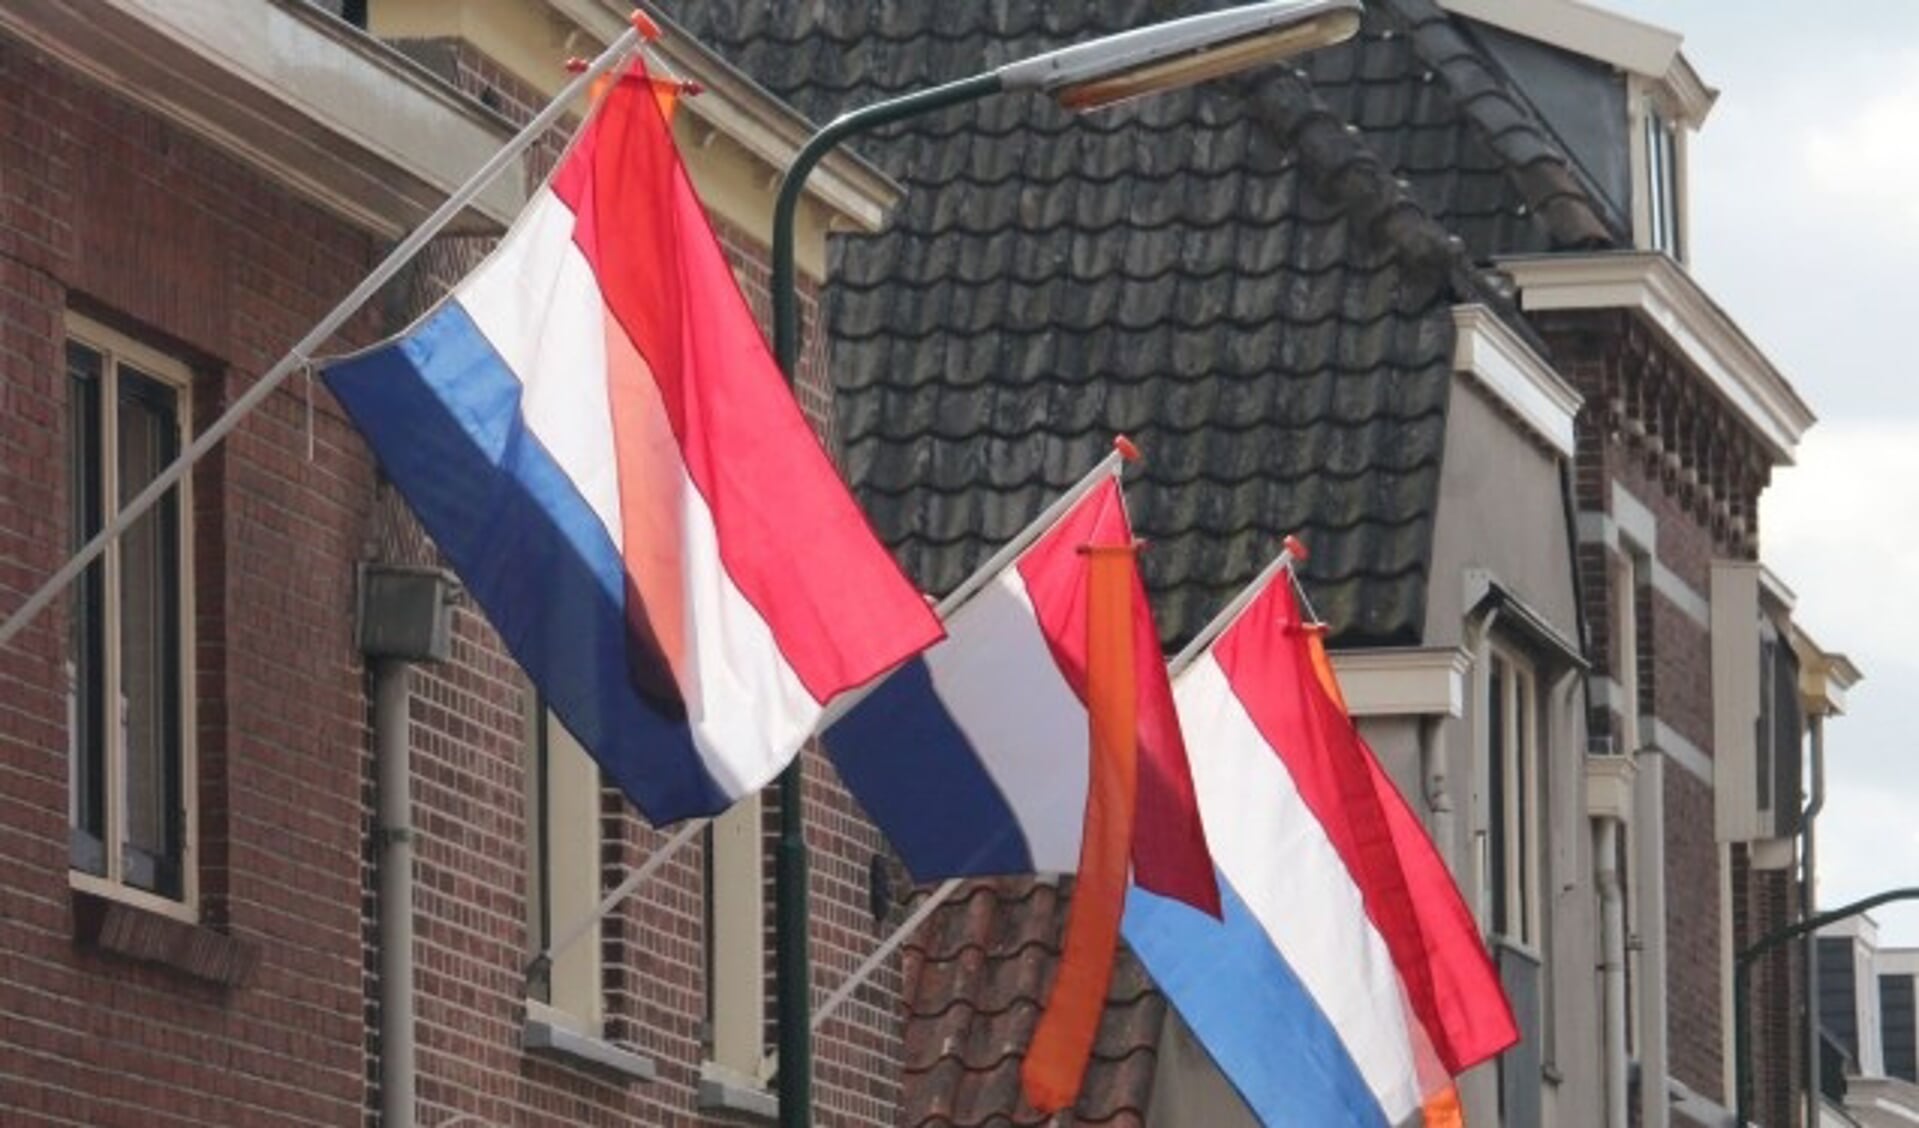 Koningsdag wordt extra feestelijk als iedereen de vlag met oranje wimpel uitsteekt. (Foto: Lysette Verwegen)